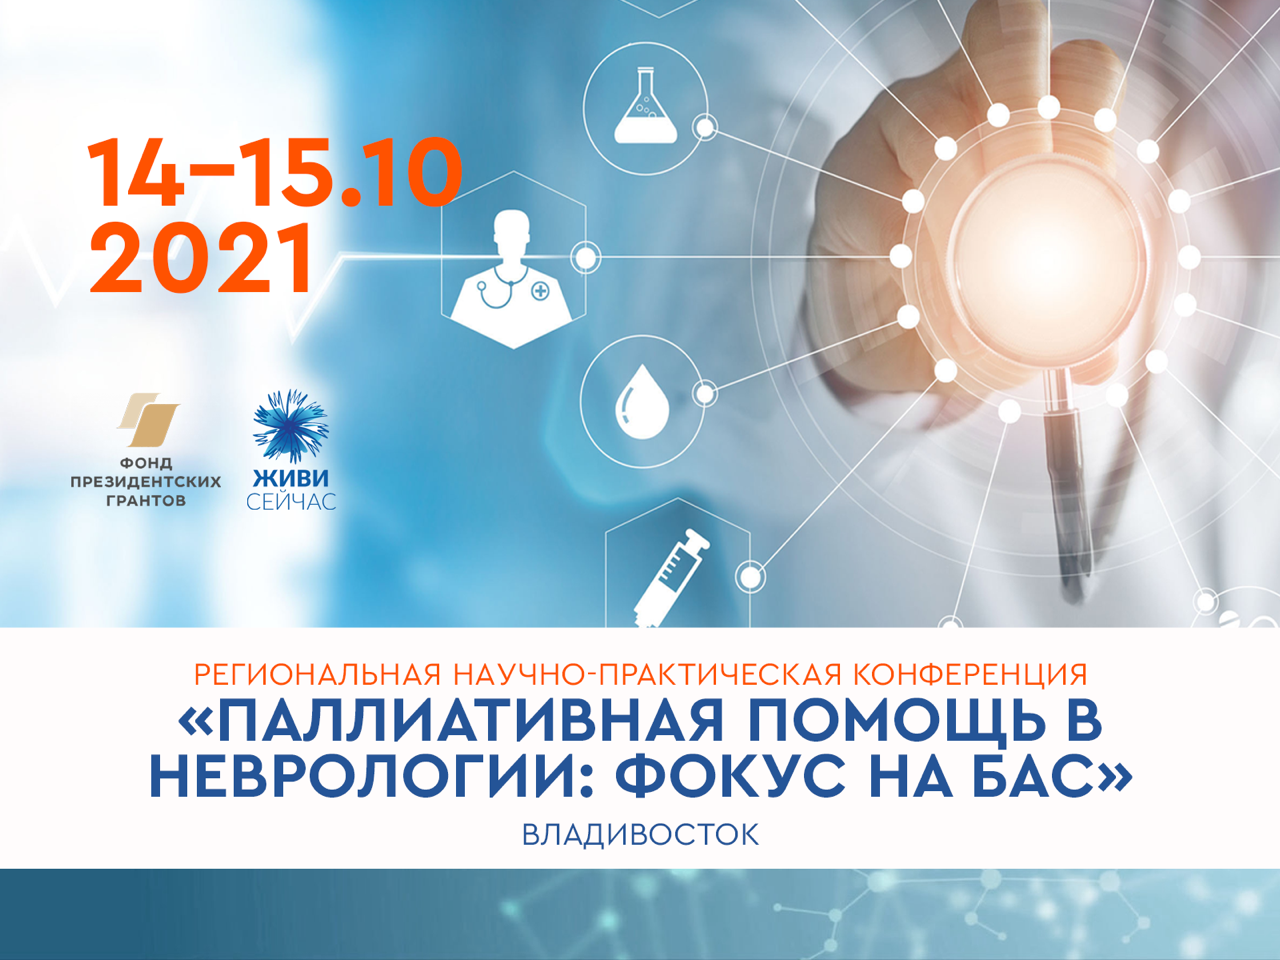 Во Владивостоке впервые пройдет научно-практическая конференция по БАС